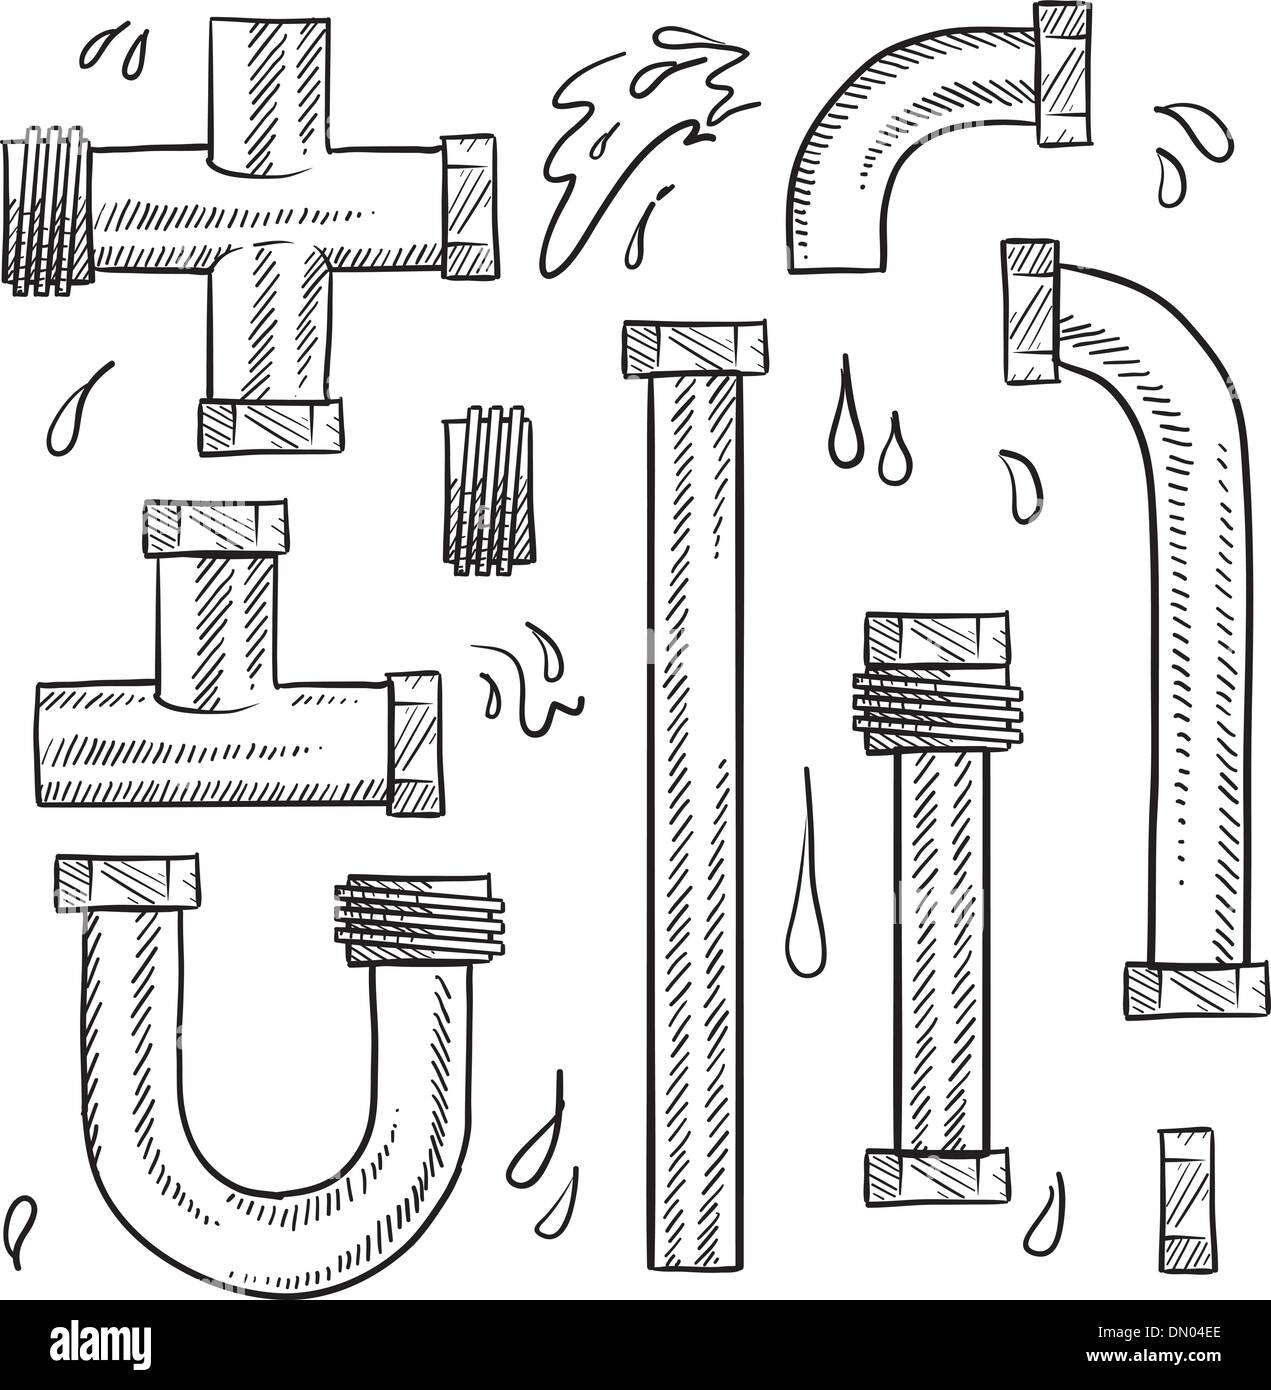 Sanitär- und Wasserleitungen Vektor-Skizze Stock Vektor